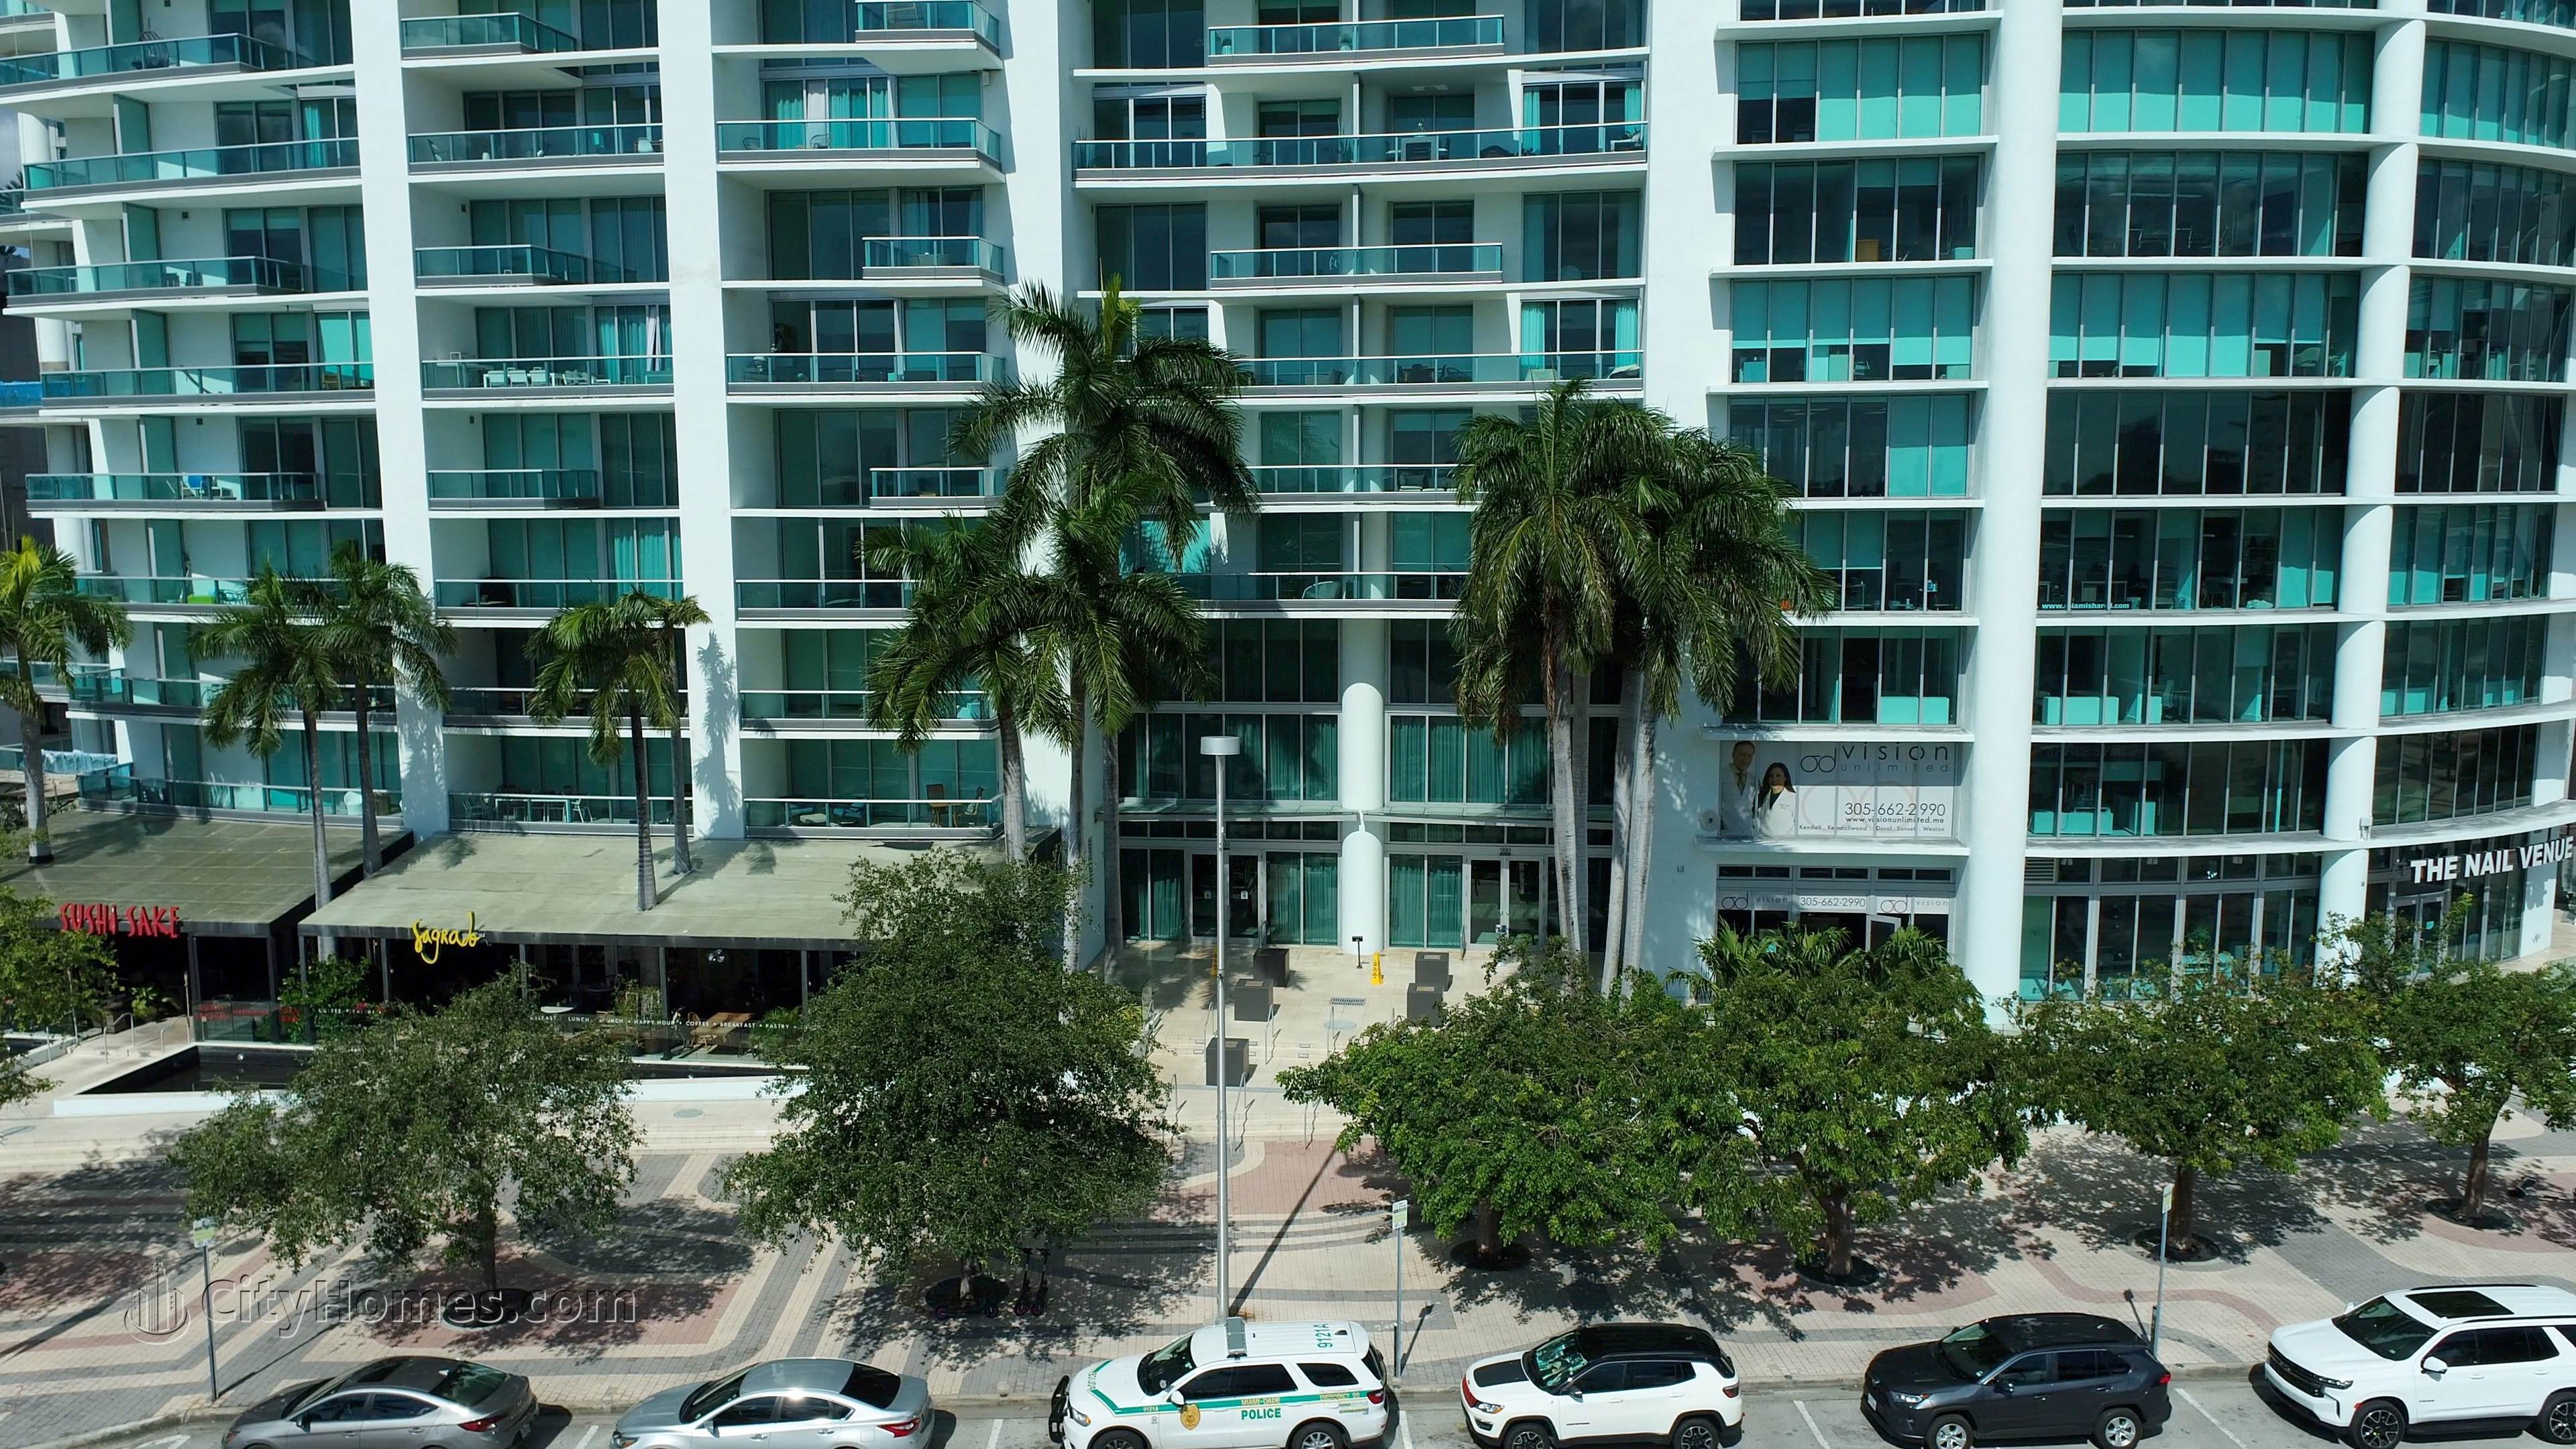 6. 900 Biscayne Bay gebouw op 900 Biscayne Boulevard, Miami, FL 33132